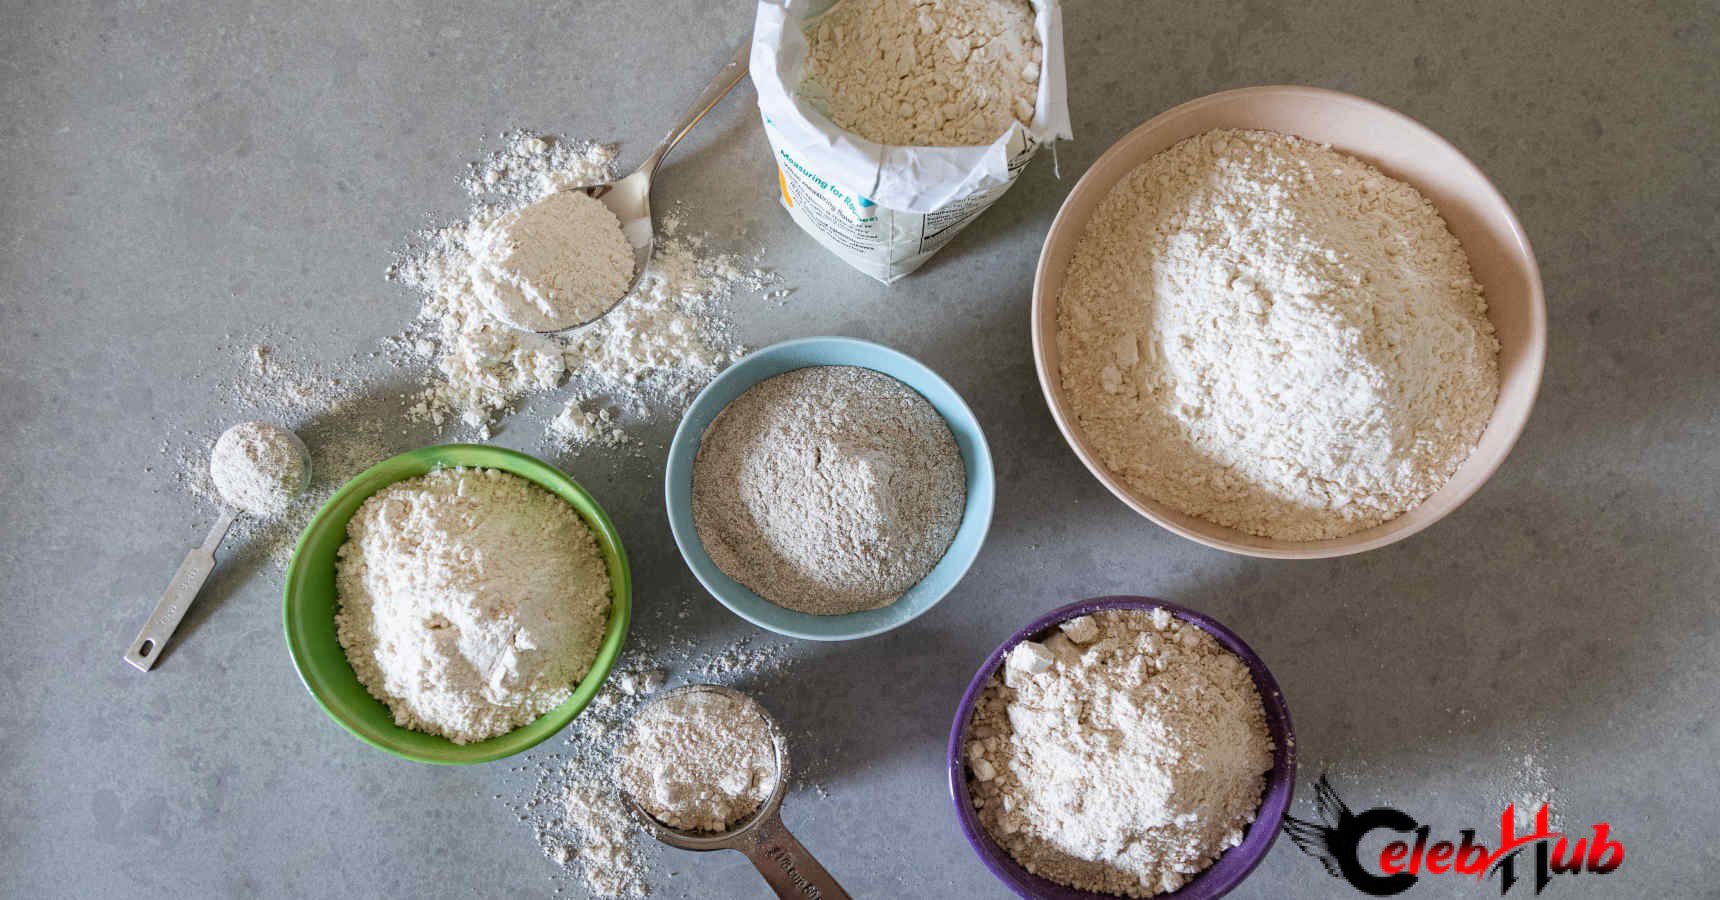 Flour dust